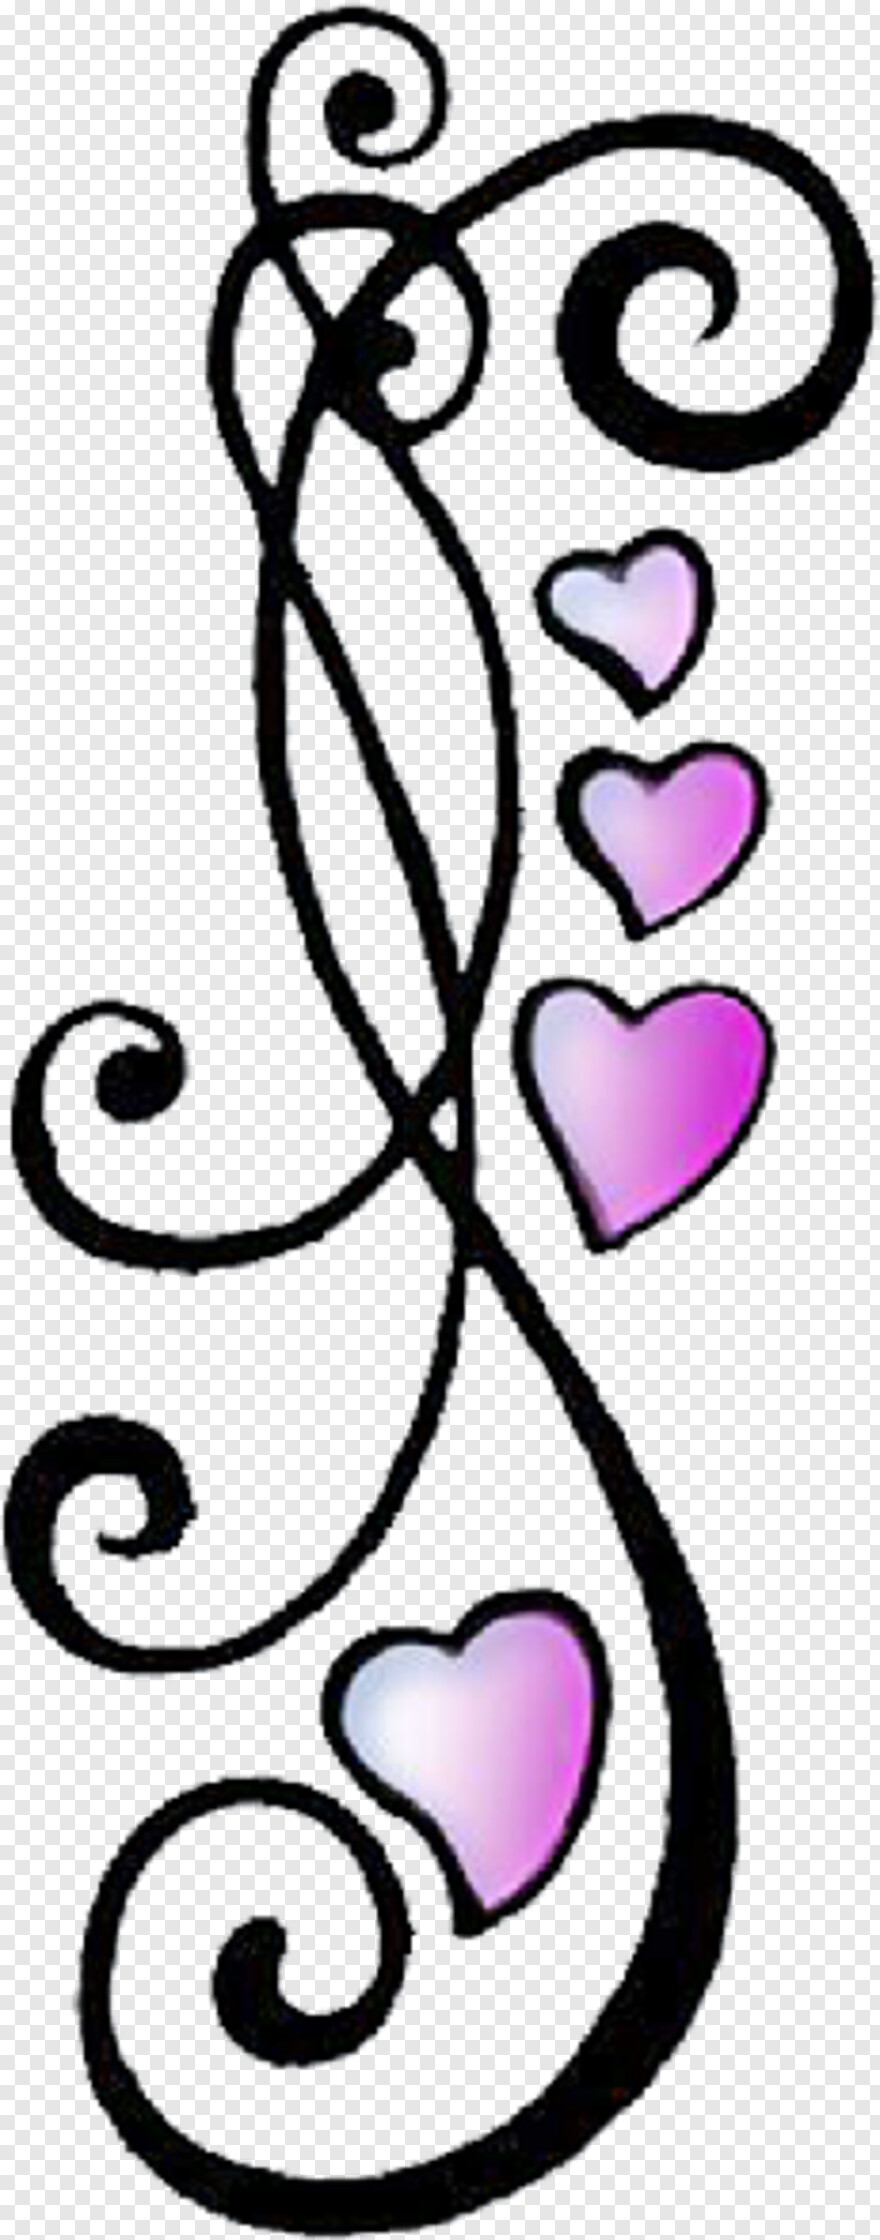  Heart Tattoo, Tattoo Designs, Heart Doodle, Black Heart, Heart Drawing, Heart Filter